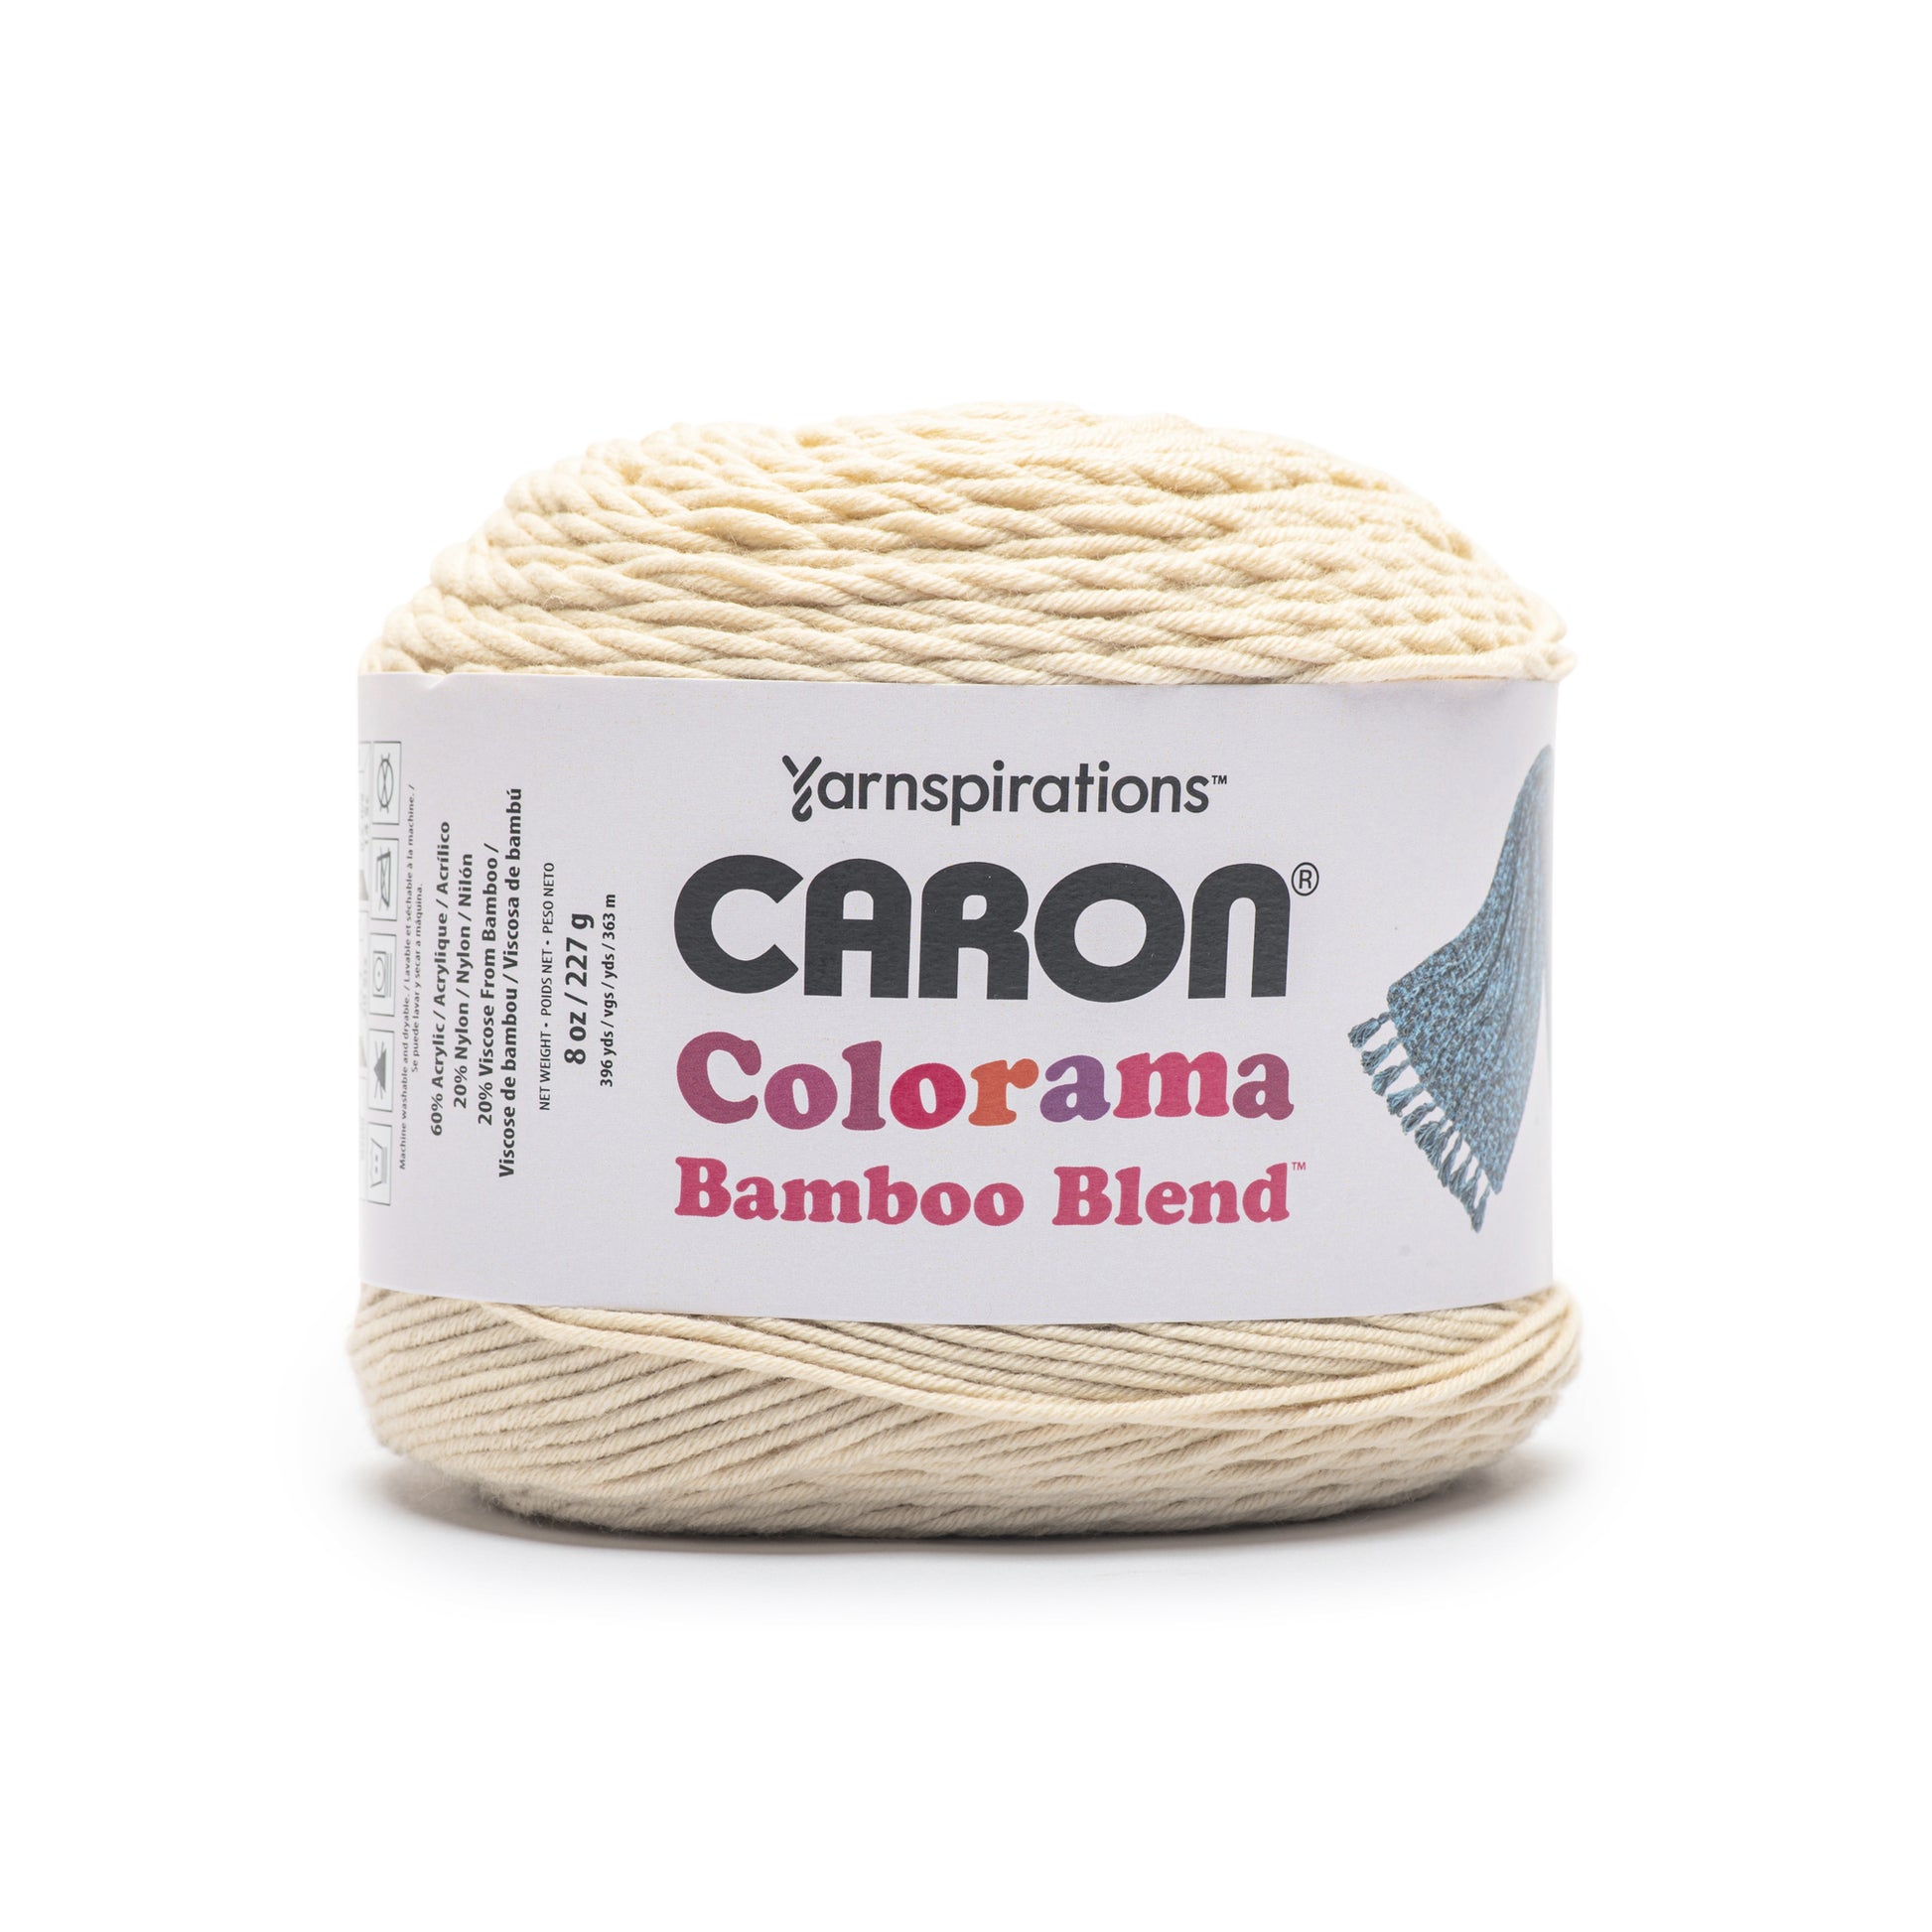 Caron Colorama Bamboo Blend Yarn (227g/8oz)